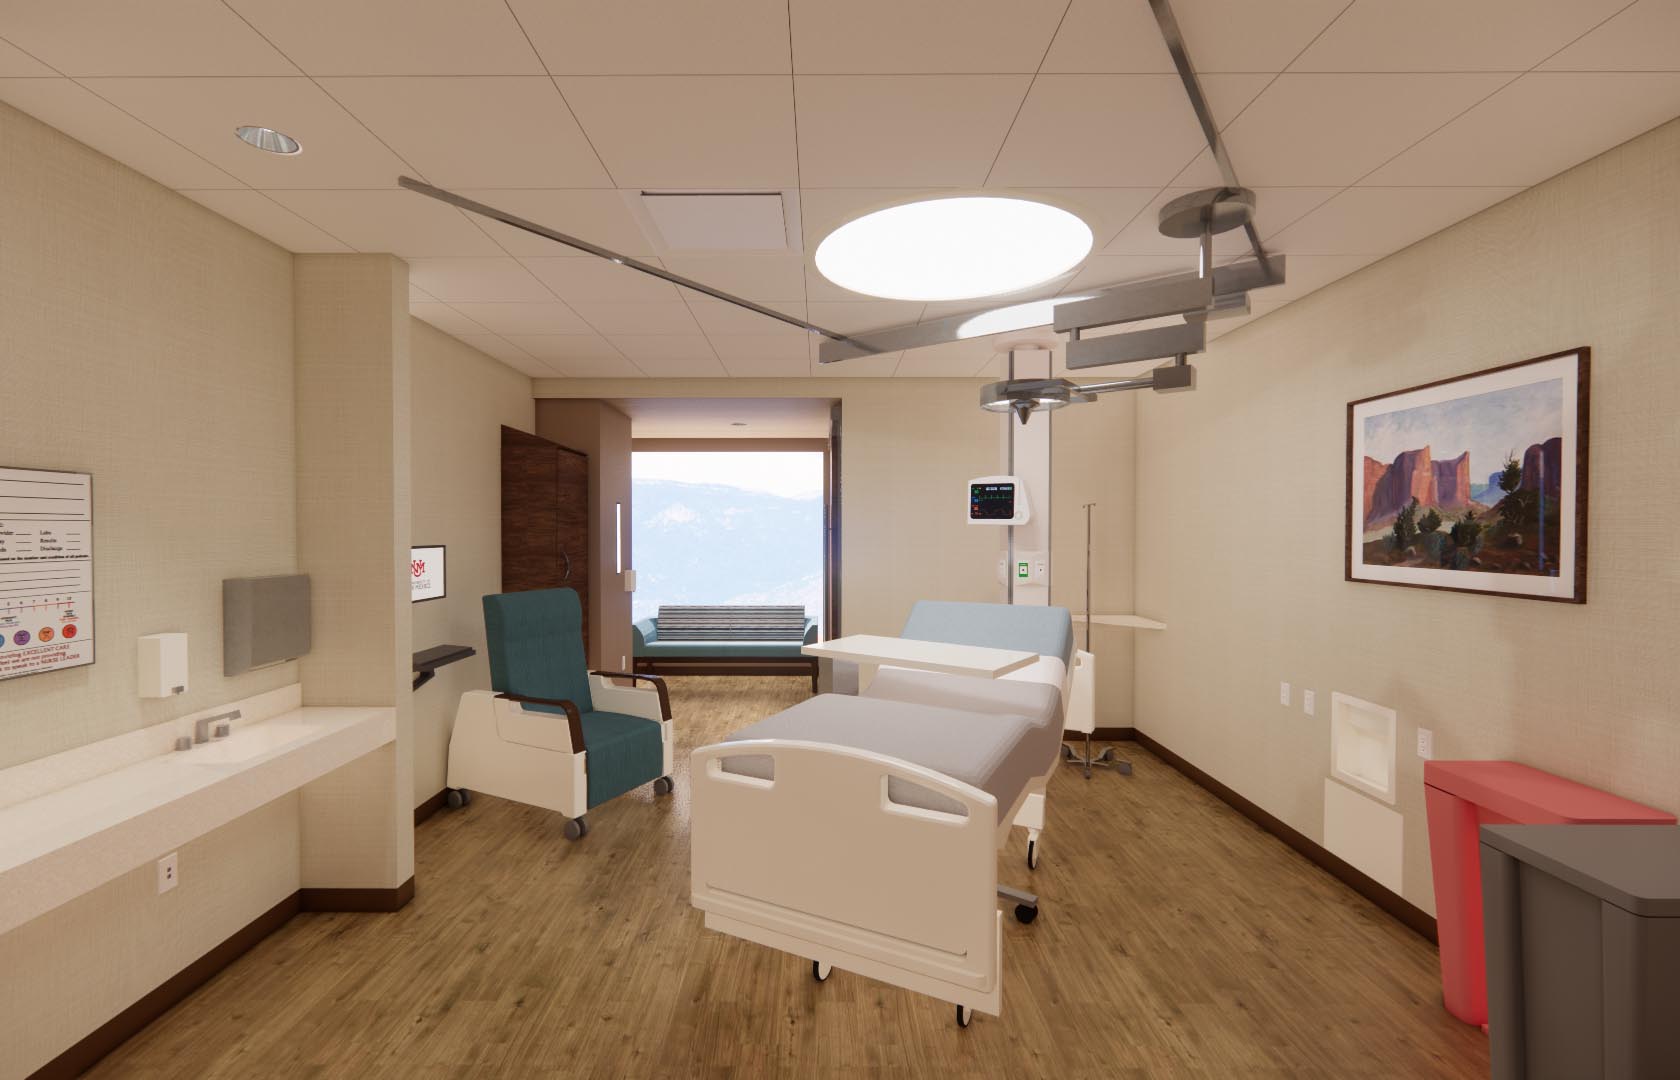 Arte conceitual de um quarto de paciente na nova expansão da torre